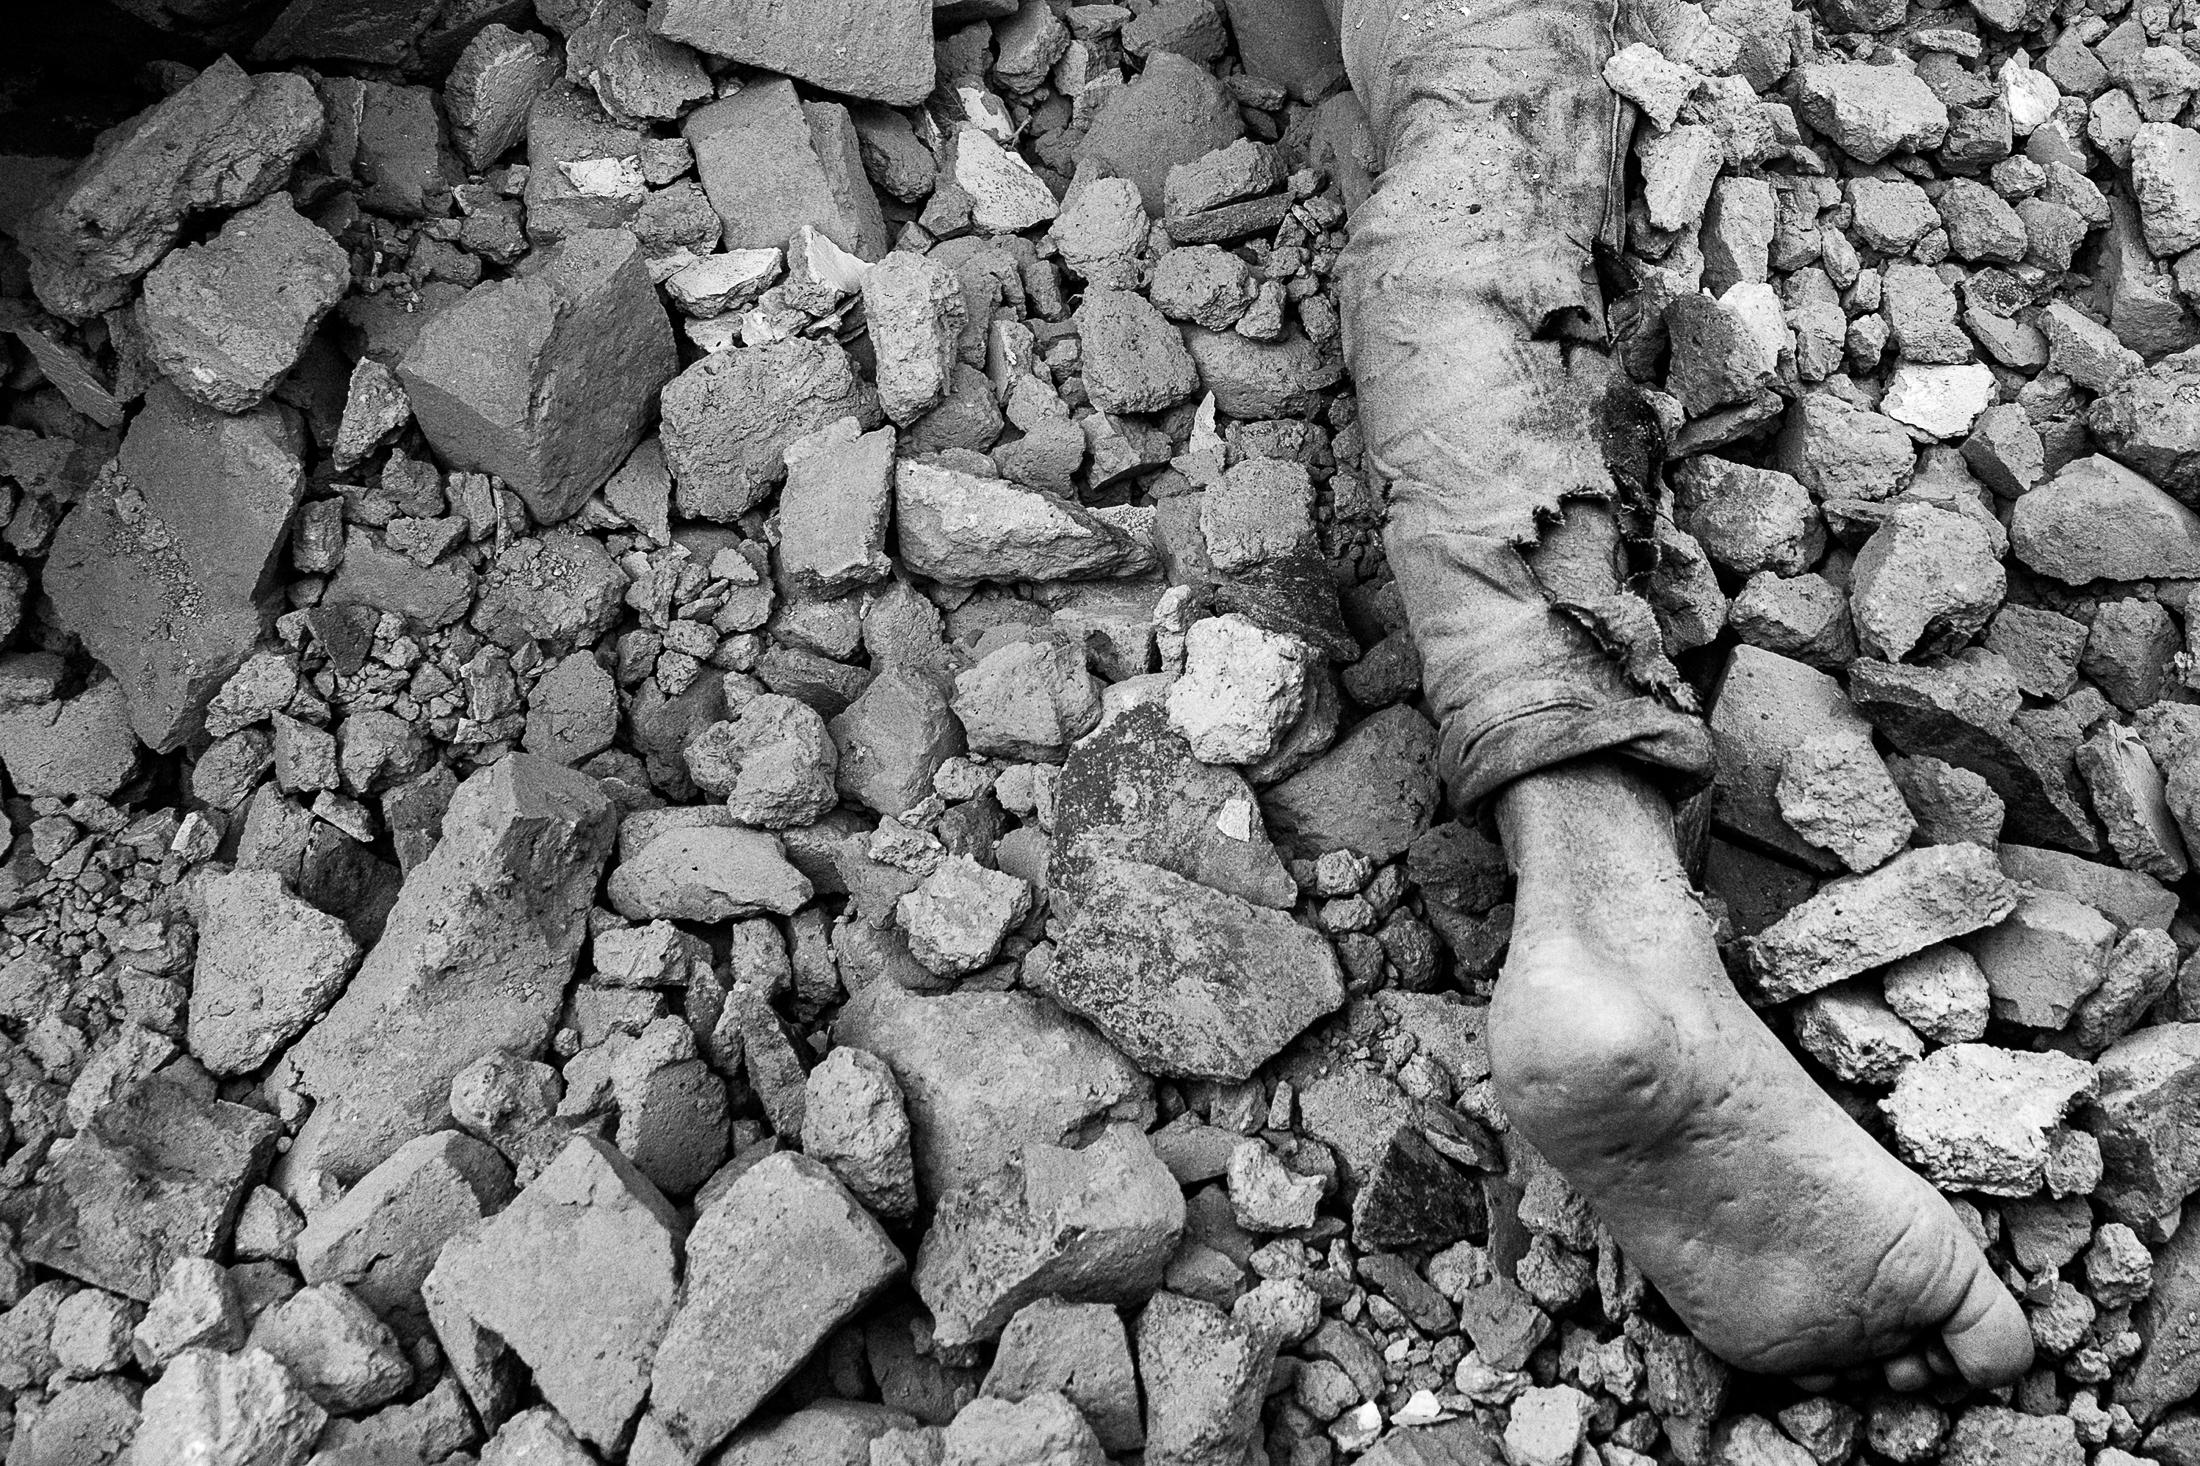 Endurance - KATHMANDU, NEPAL - APRIL 25: The body of a man lays dead...